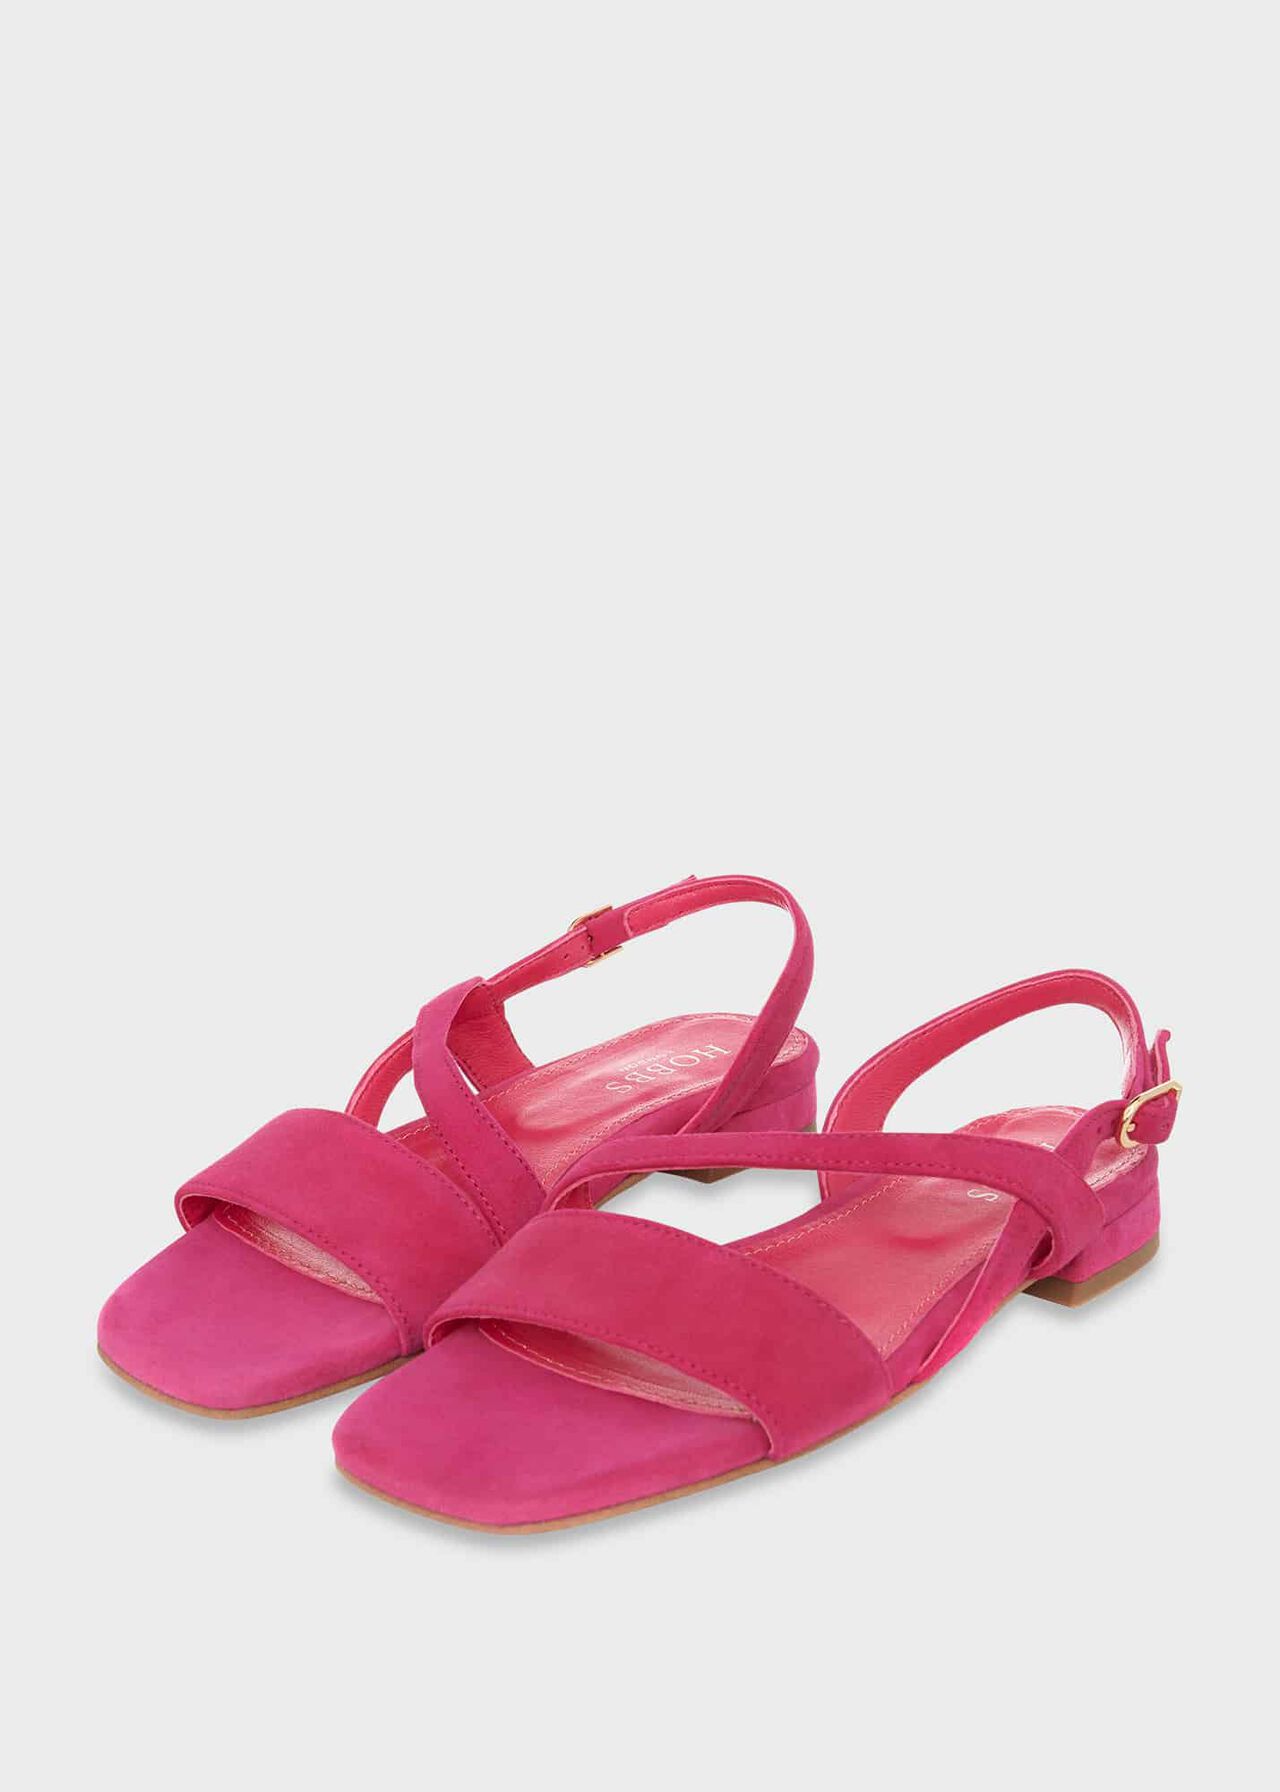 Mila Flats Sandal, Bright Pink, hi-res